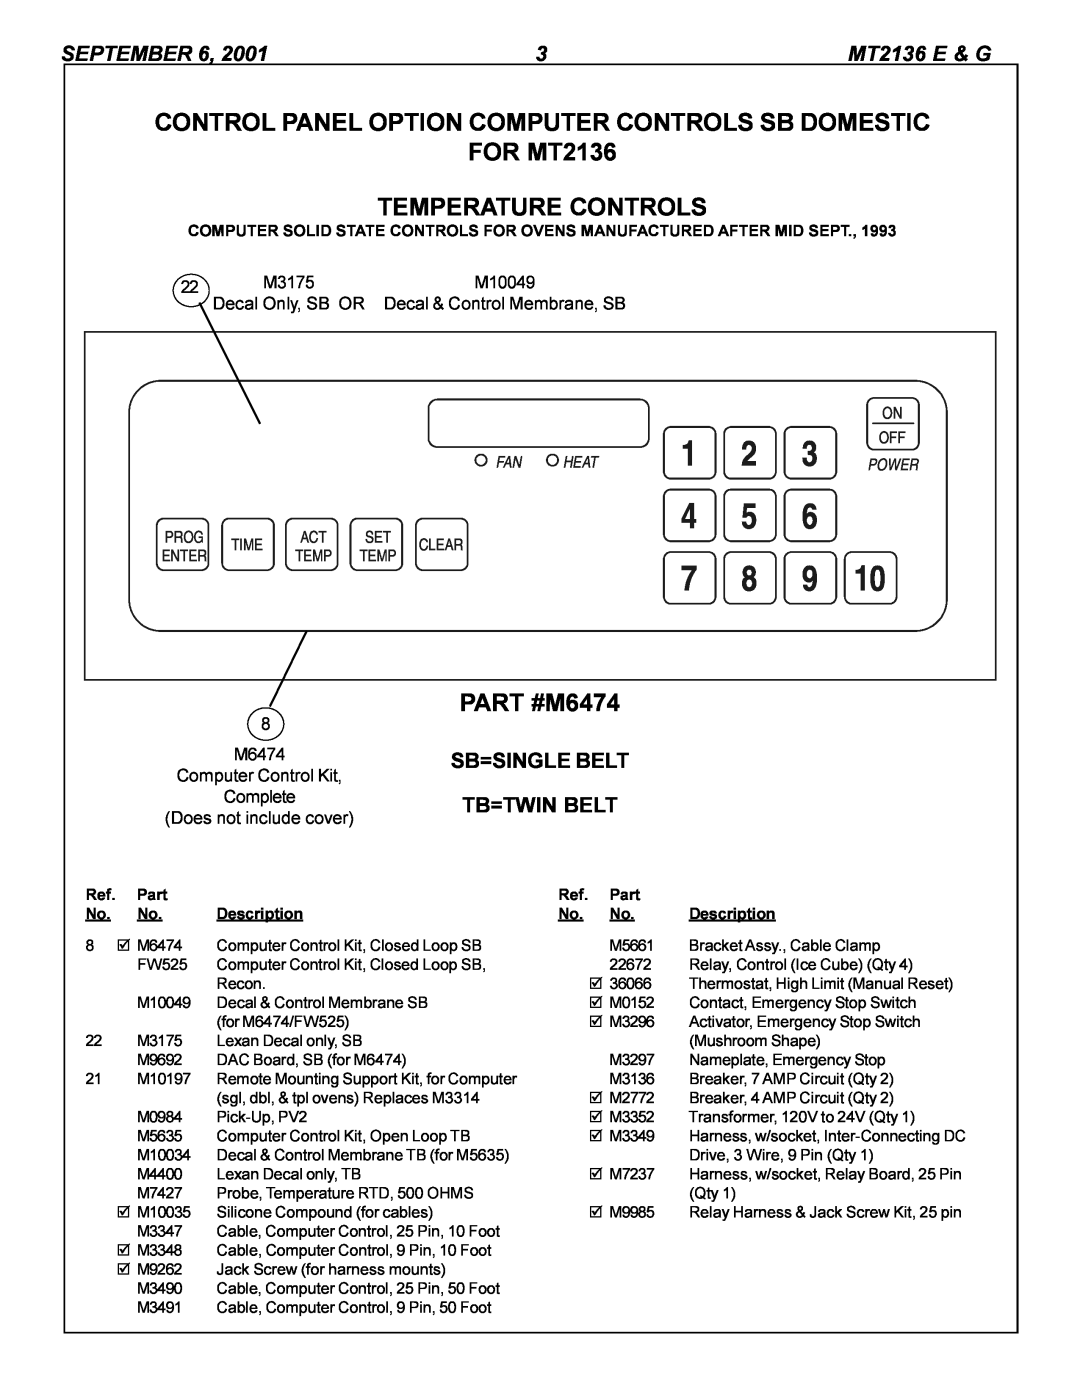 Blodgett MT2136 G manual FOR MT2136 TEMPERATURE CONTROLS, PART #M6474, September, MT2136 E & G 